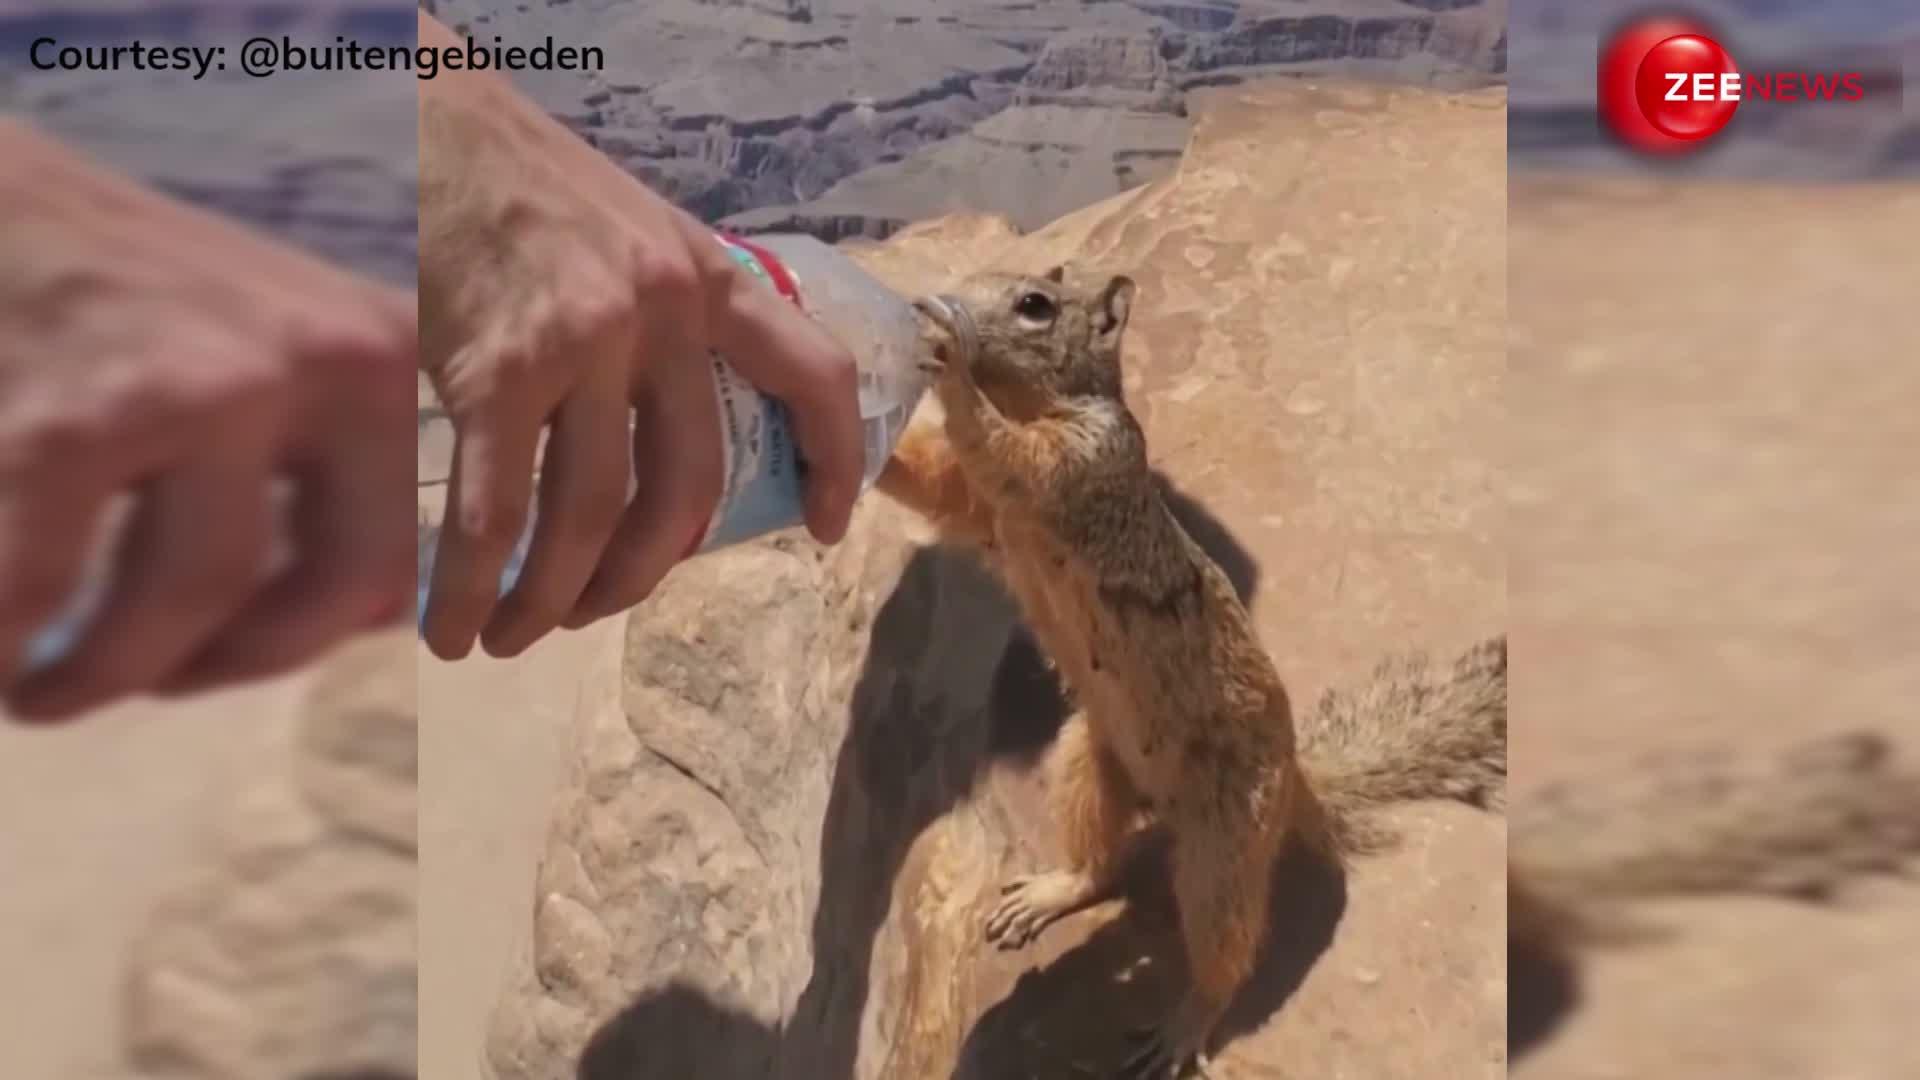 इसे कहते हैं इंसानियत! प्यासी गिलहरी को शख्स ने यूं पिलाया पानी, दिल को छू जाने वाला वीडियो वायरल